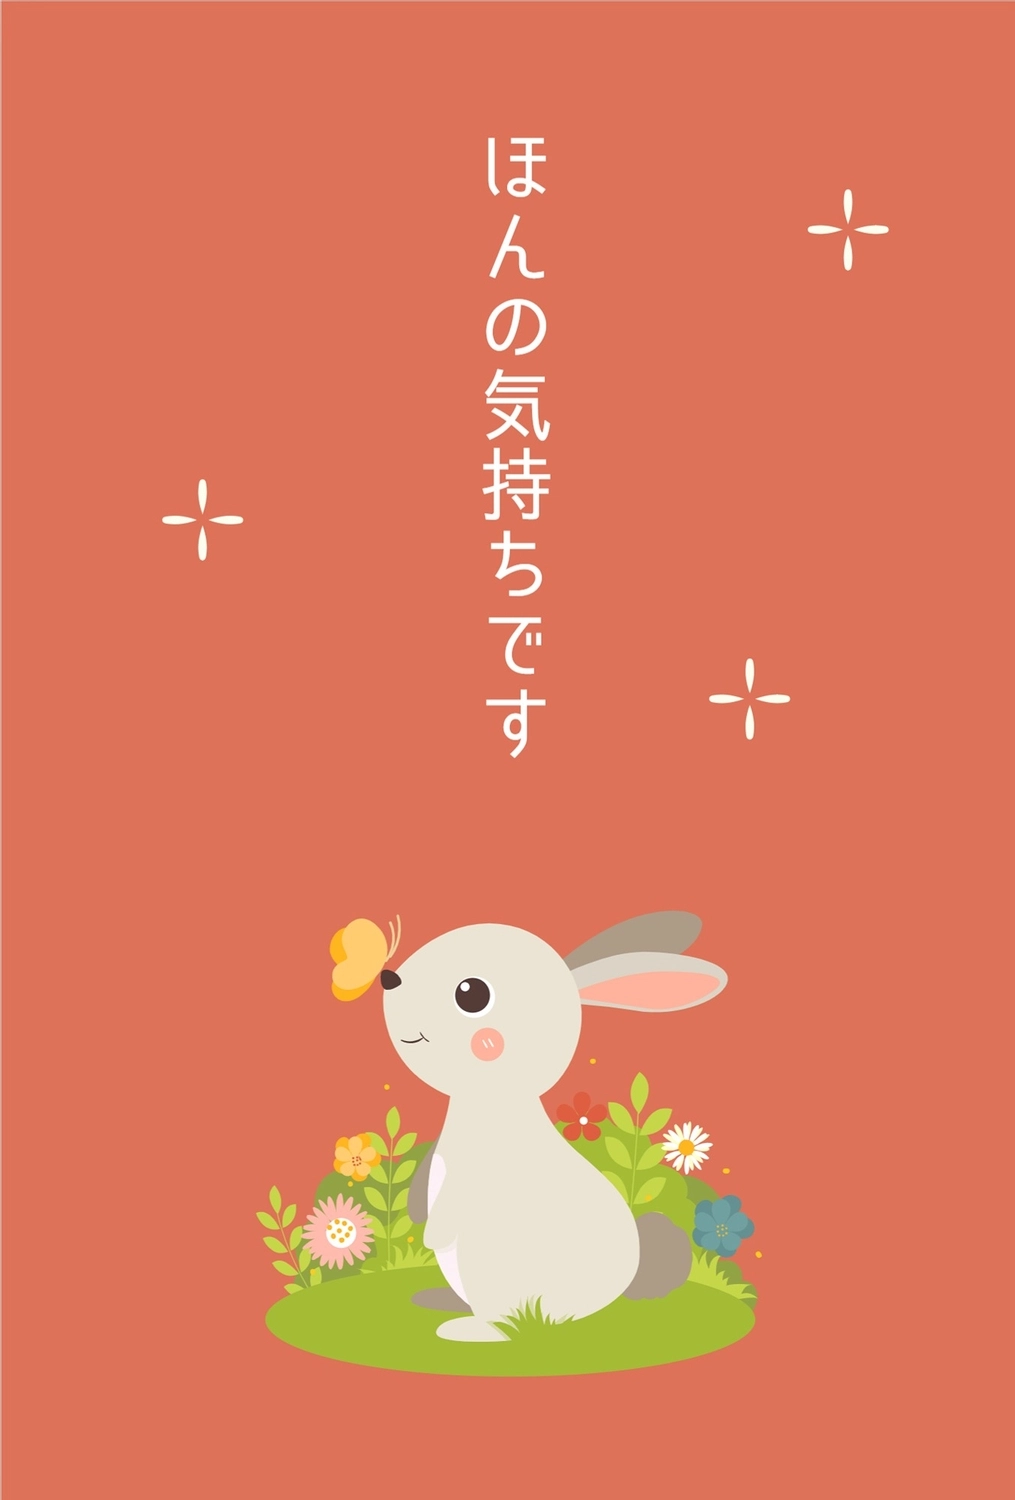 ウサギイラストのお礼カード, An illustration, grateful, Thank you, message card template